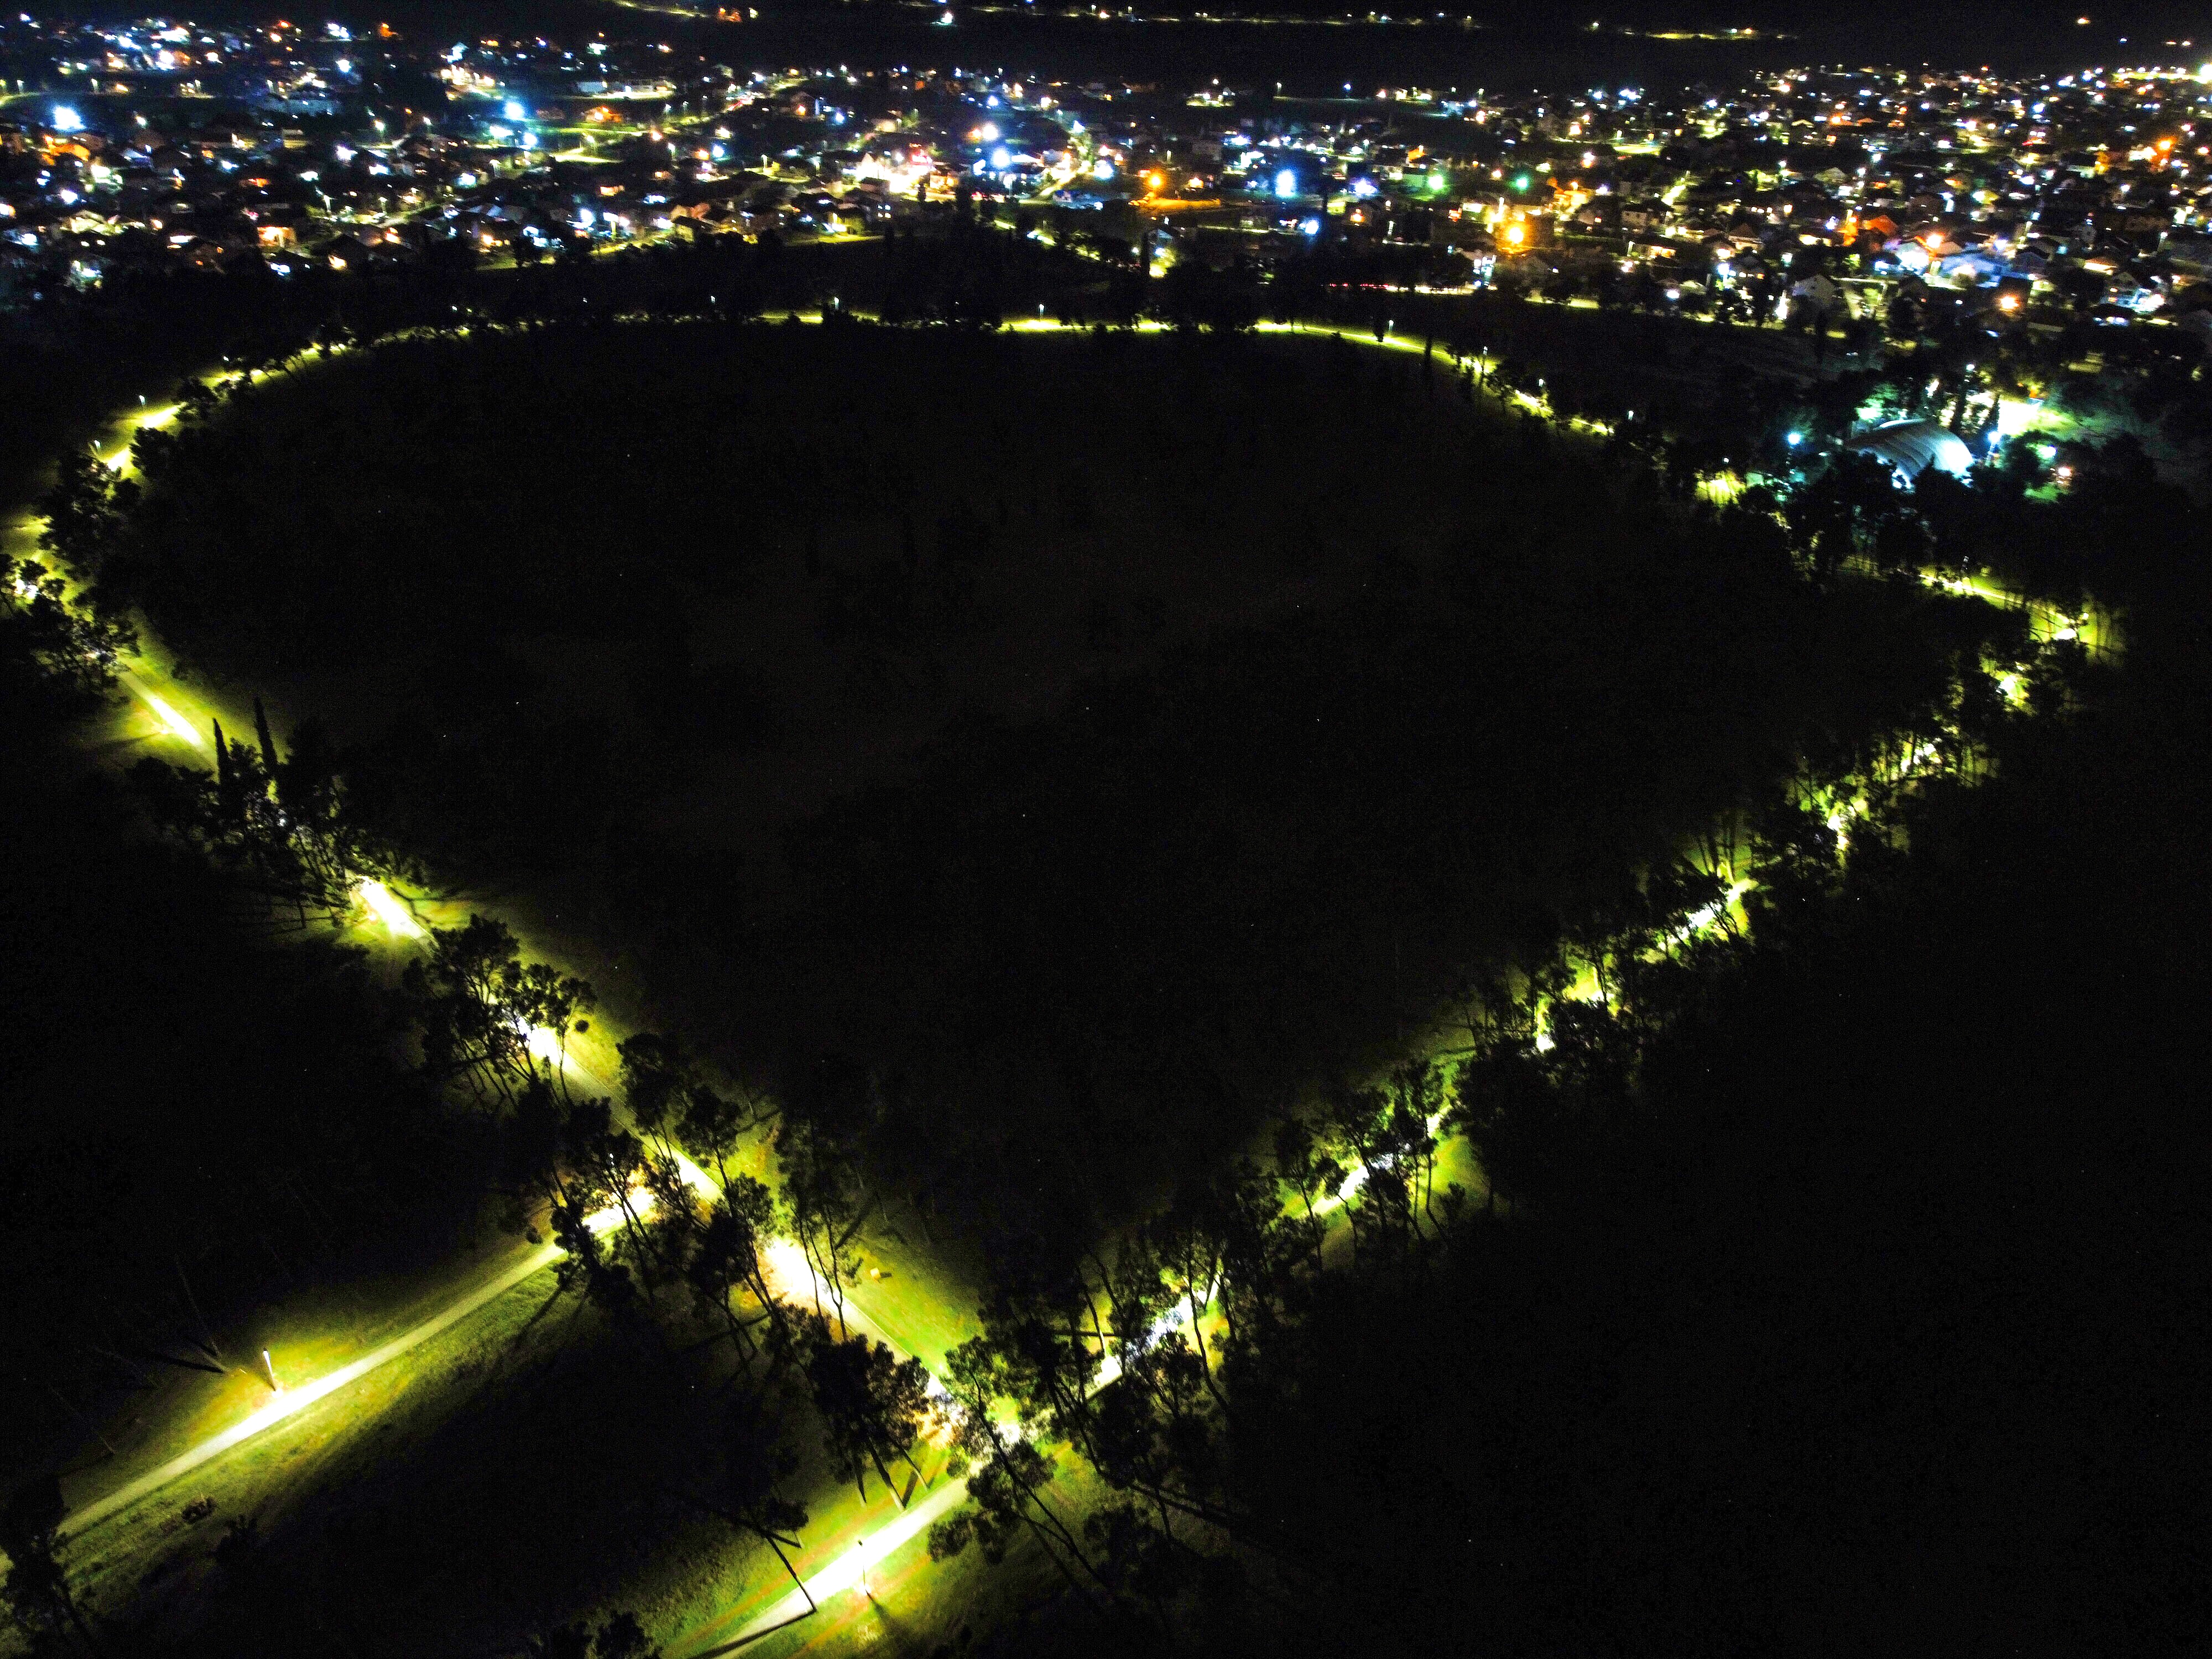 Savremena LED rasvjeta postavljena u park-šumi Zlatica